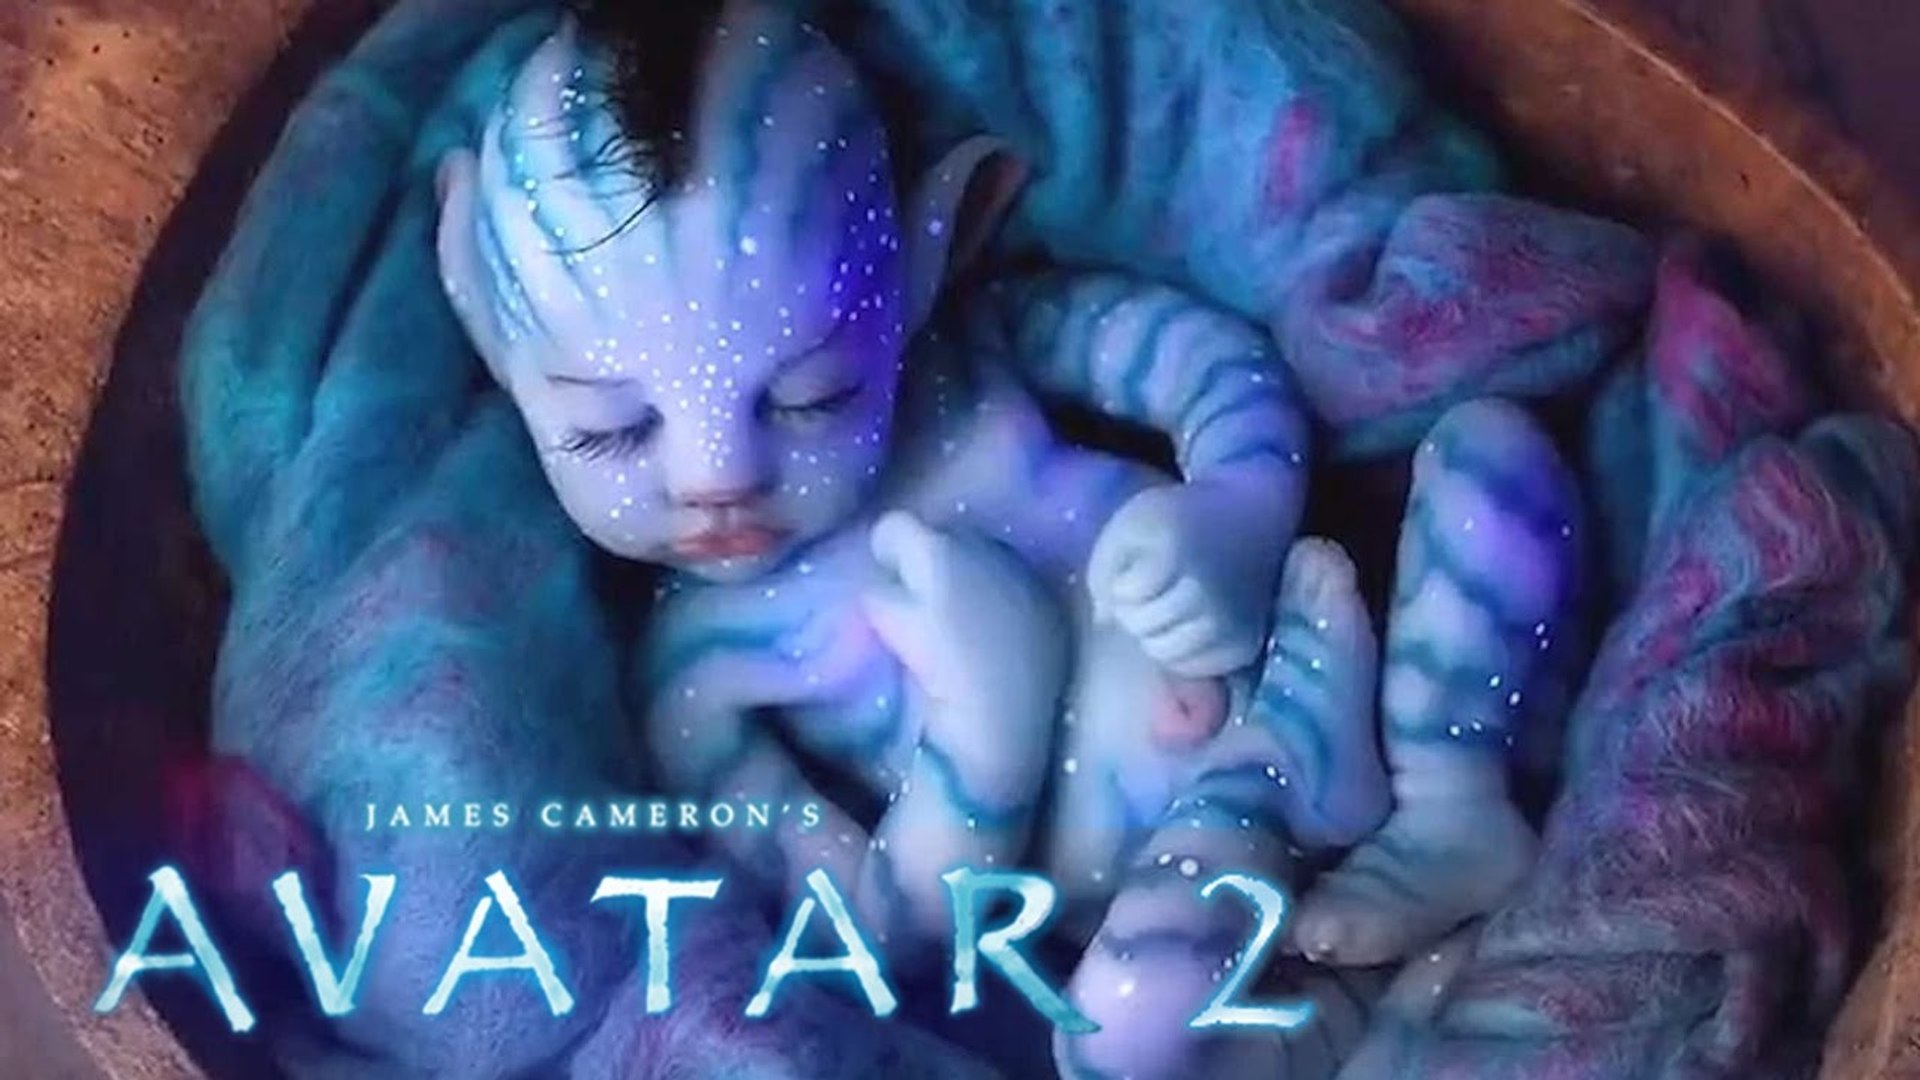 Trailer mới của Avatar 2 hứa hẹn cái kết đầy bi thương  Divine News